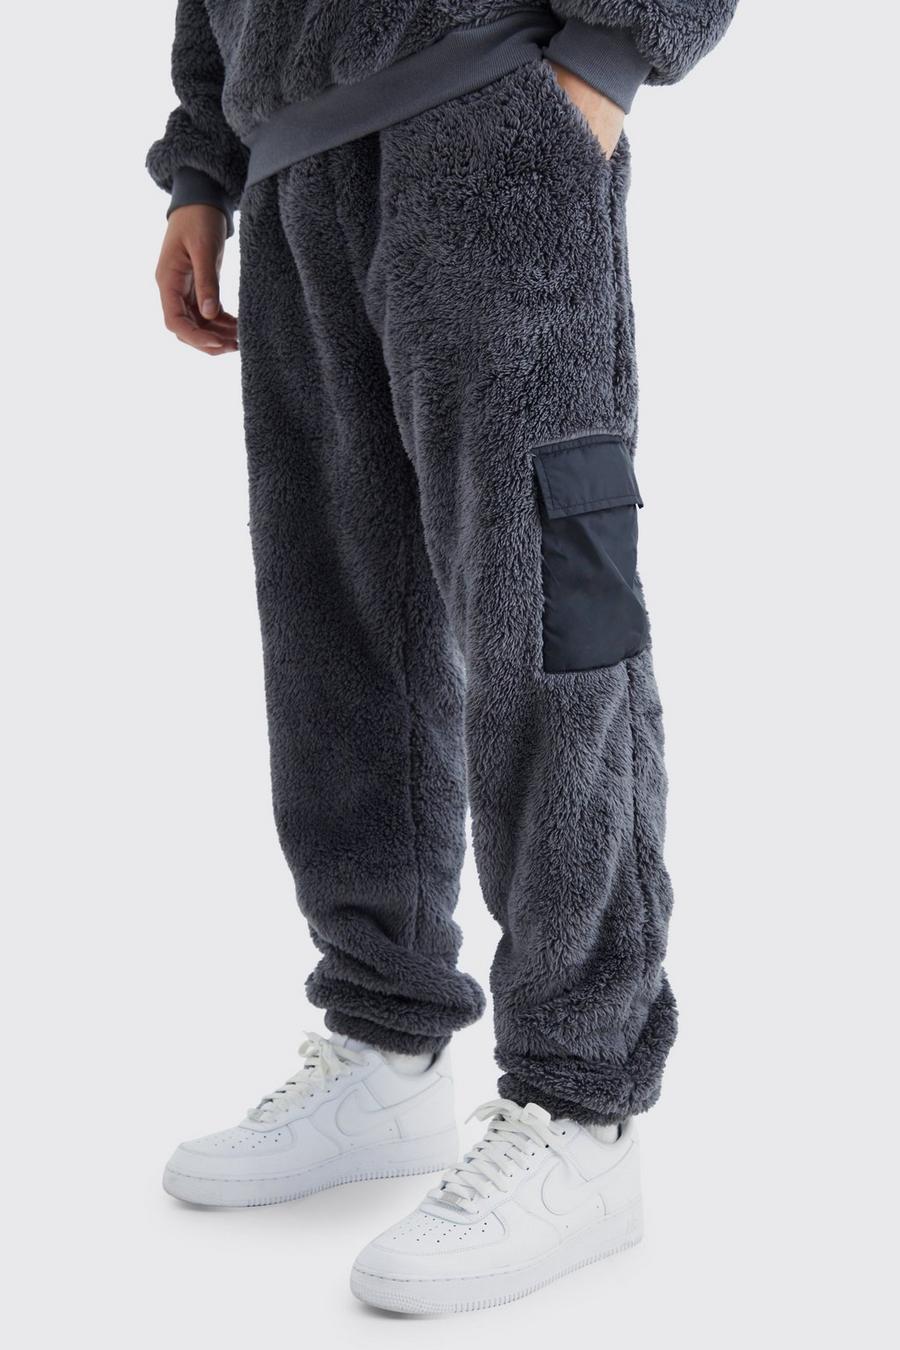 Pantaloni tuta in pile borg e nylon con tasche Cargo, Charcoal